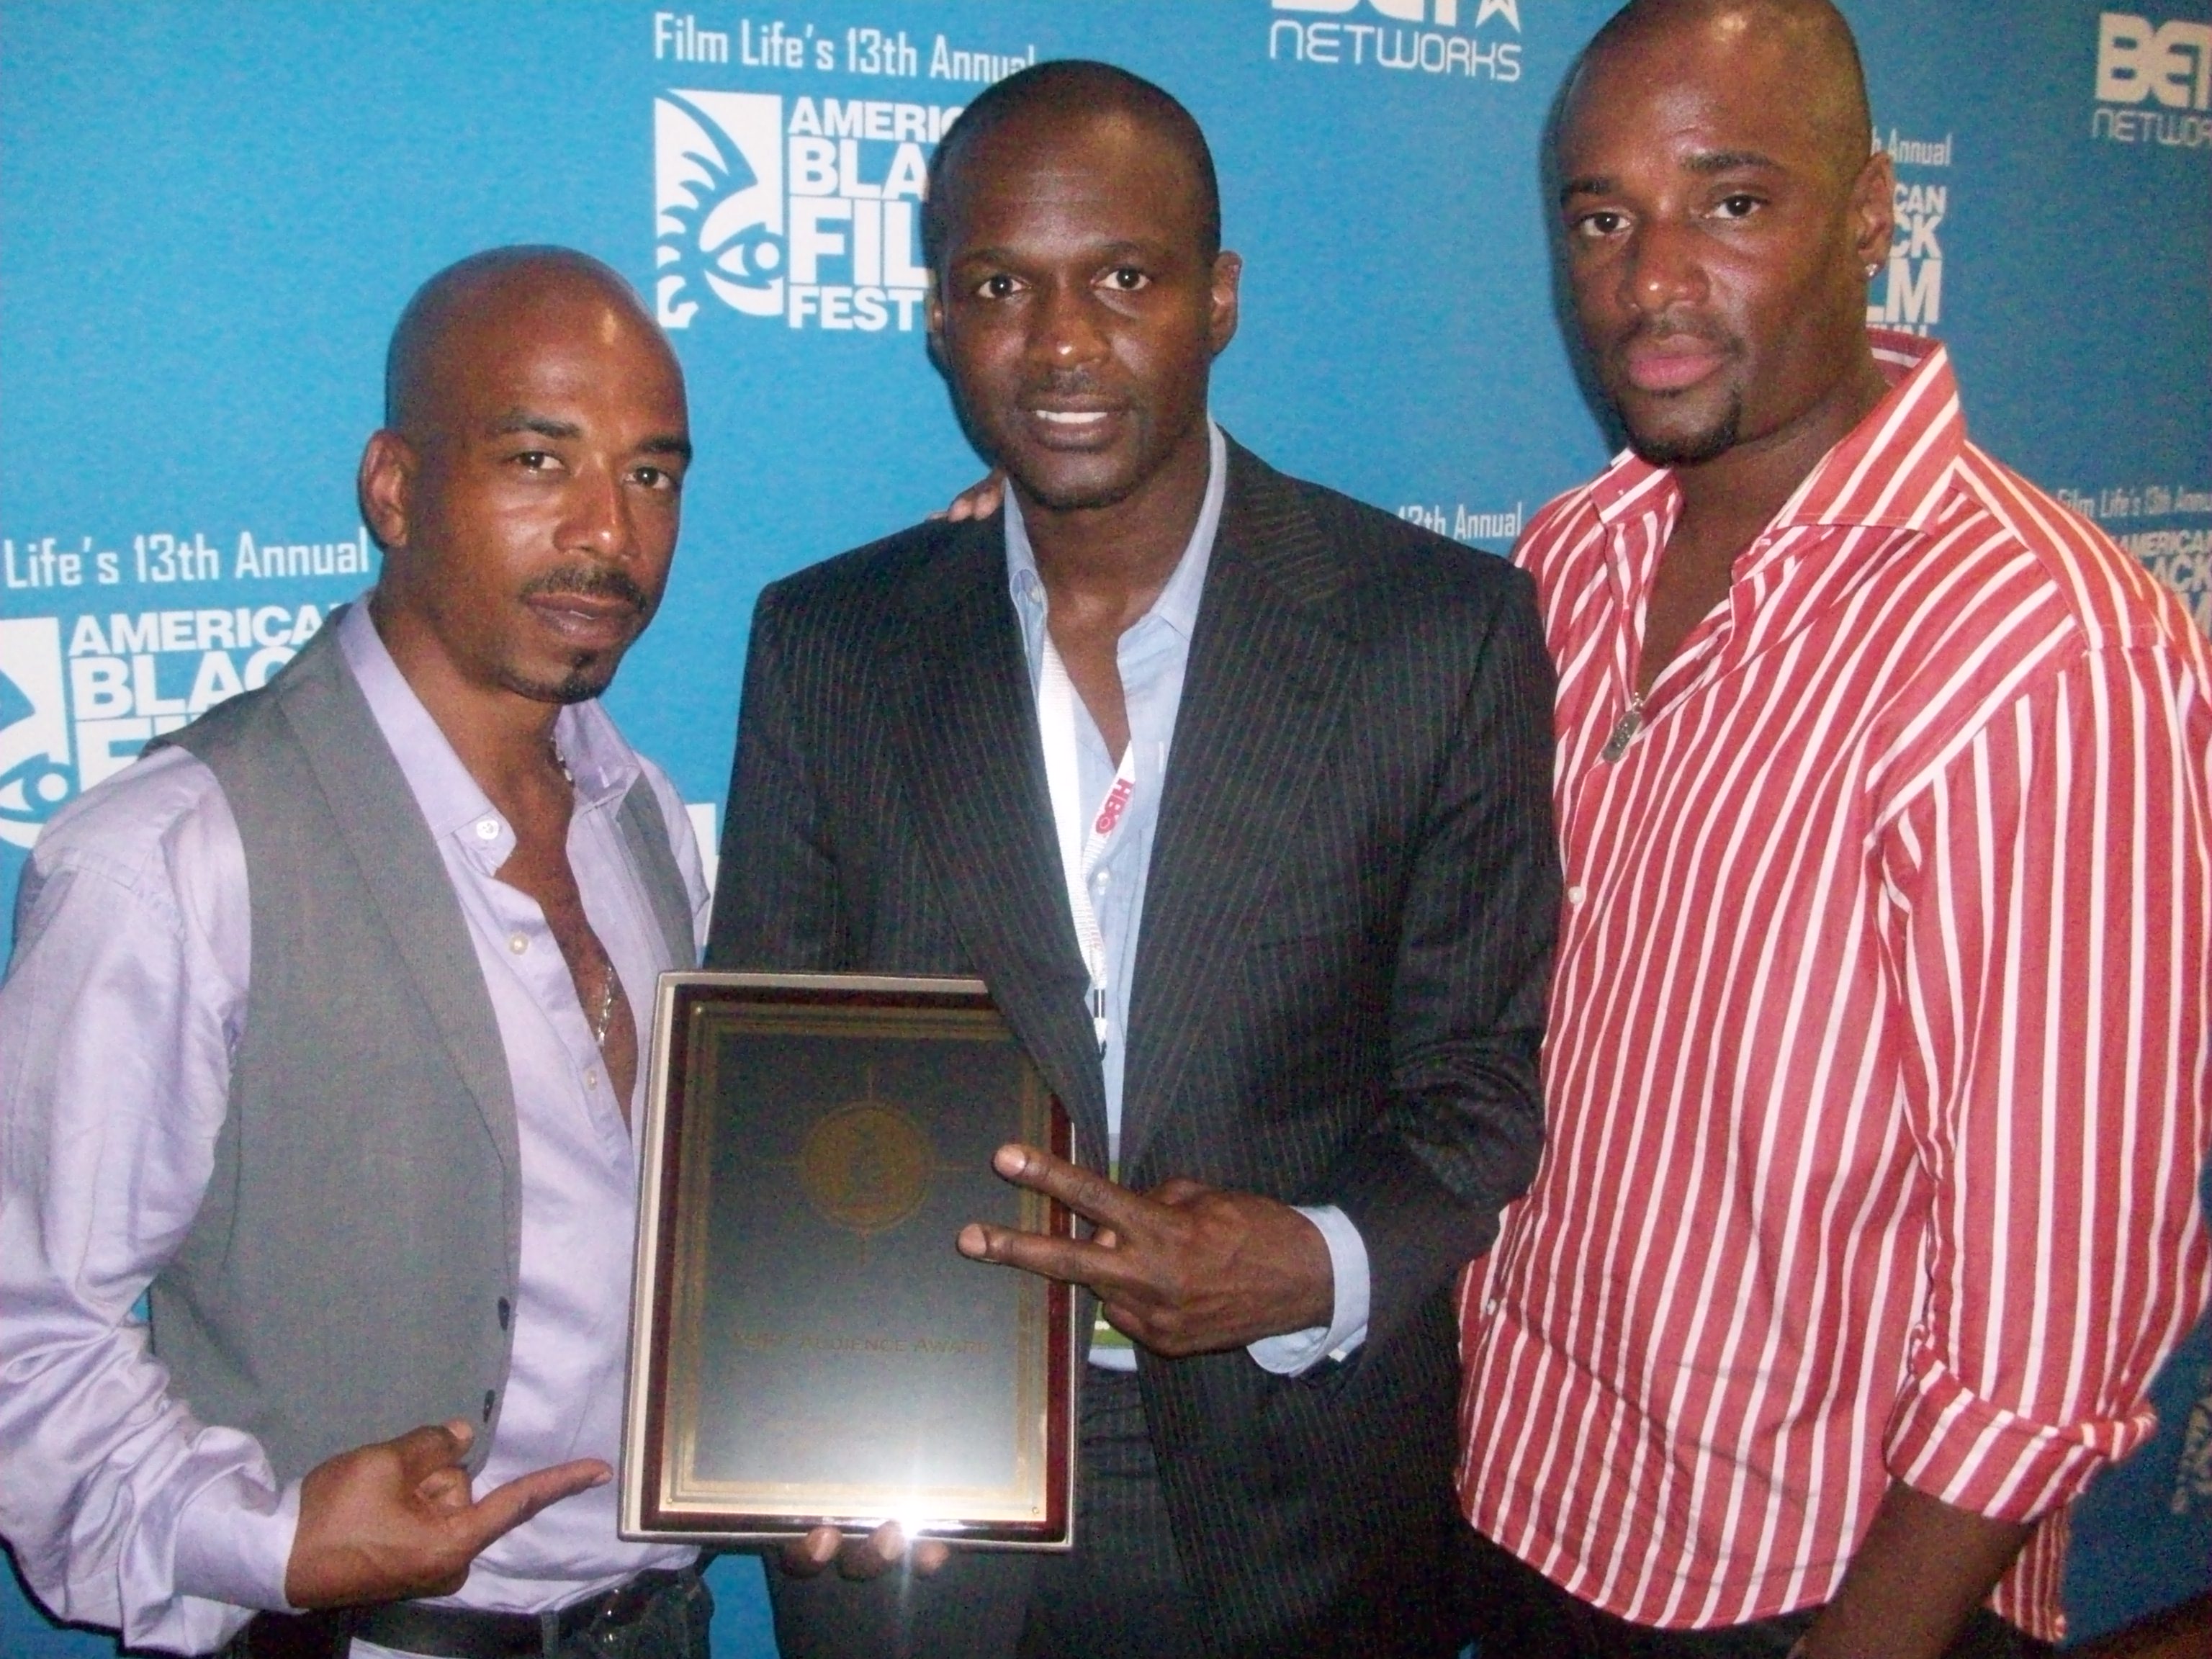 American Black film festival award ceremony